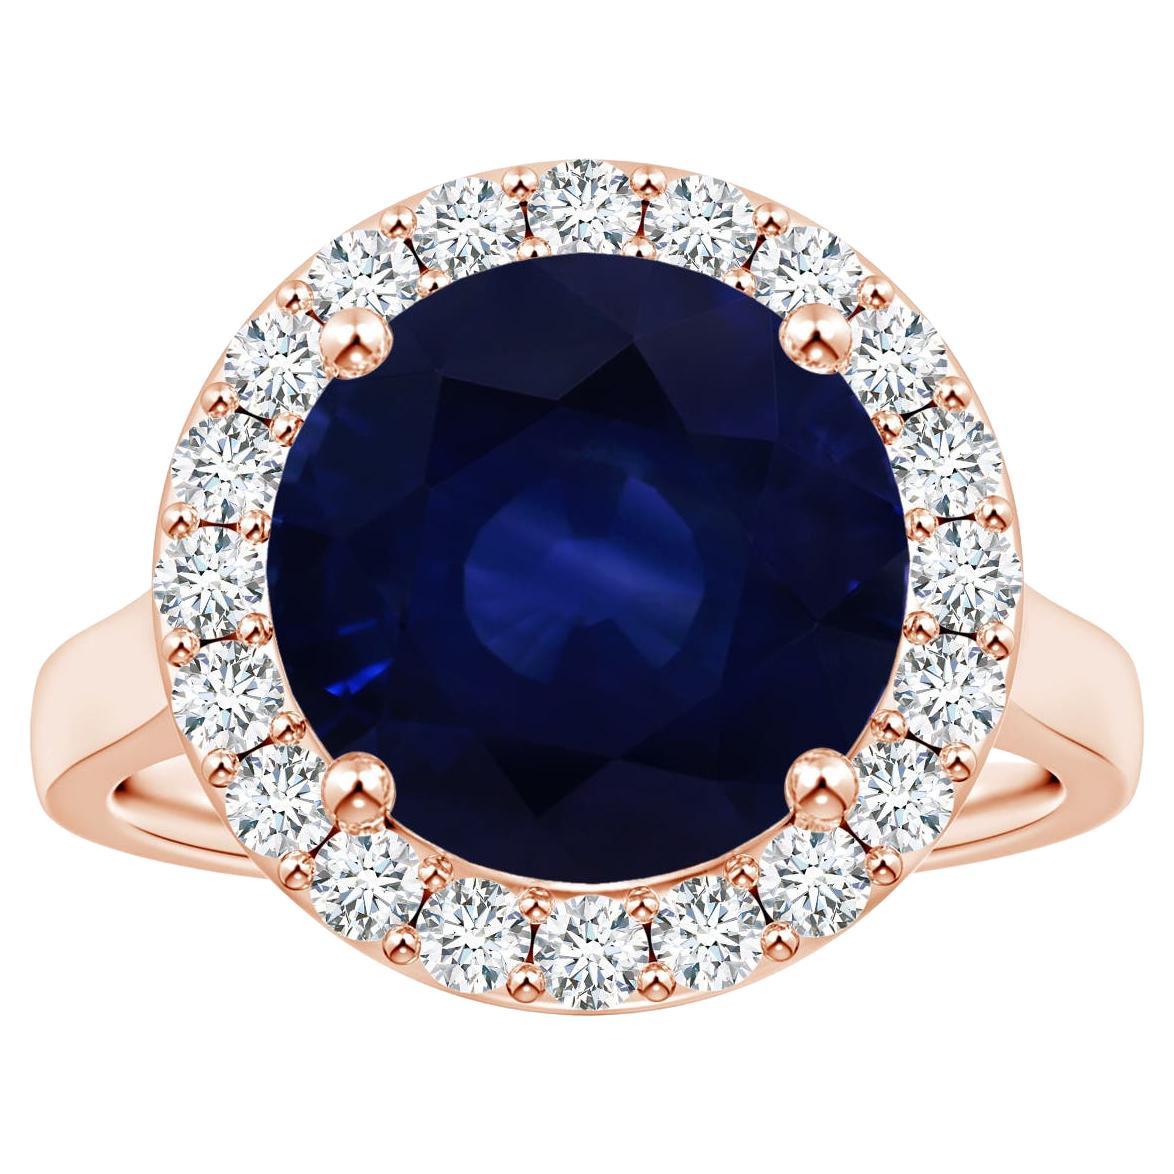 ANGARA Bague en or rose avec saphir bleu naturel certifié GIA de 6,63 carats et diamants